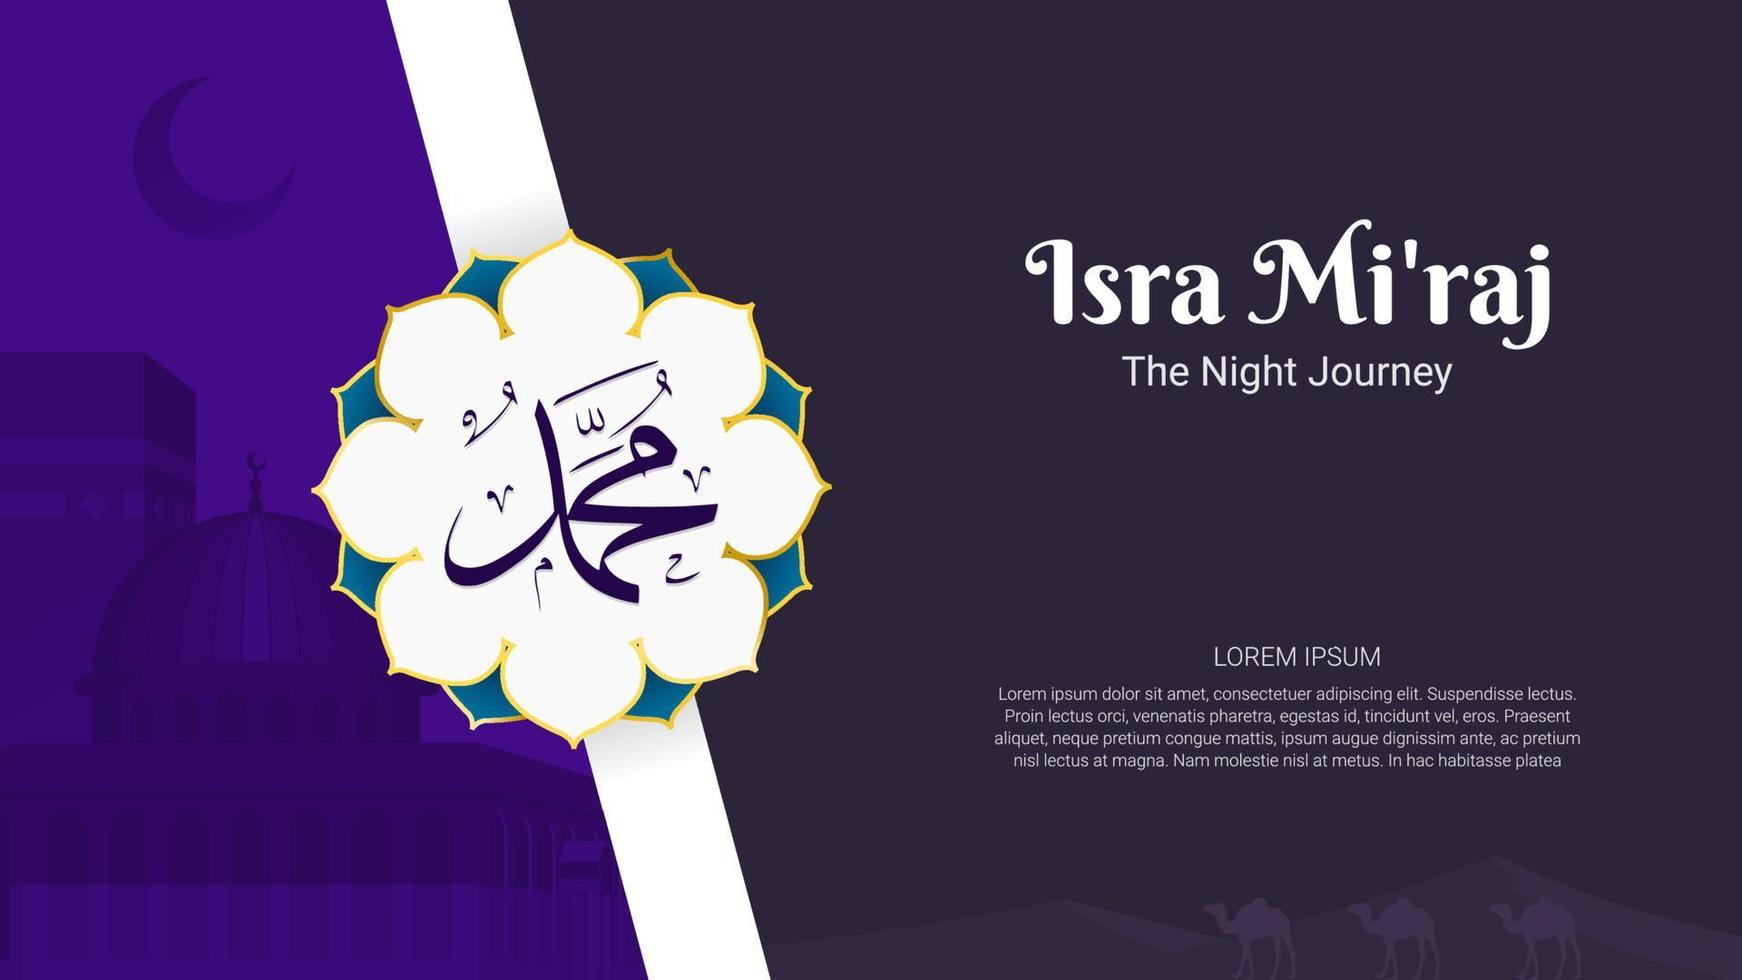 diseño de fondo islámico. al-isra wal mi'raj significa el viaje nocturno del profeta muhammad. pancarta, póster, tarjeta de felicitación. ilustración vectorial vector